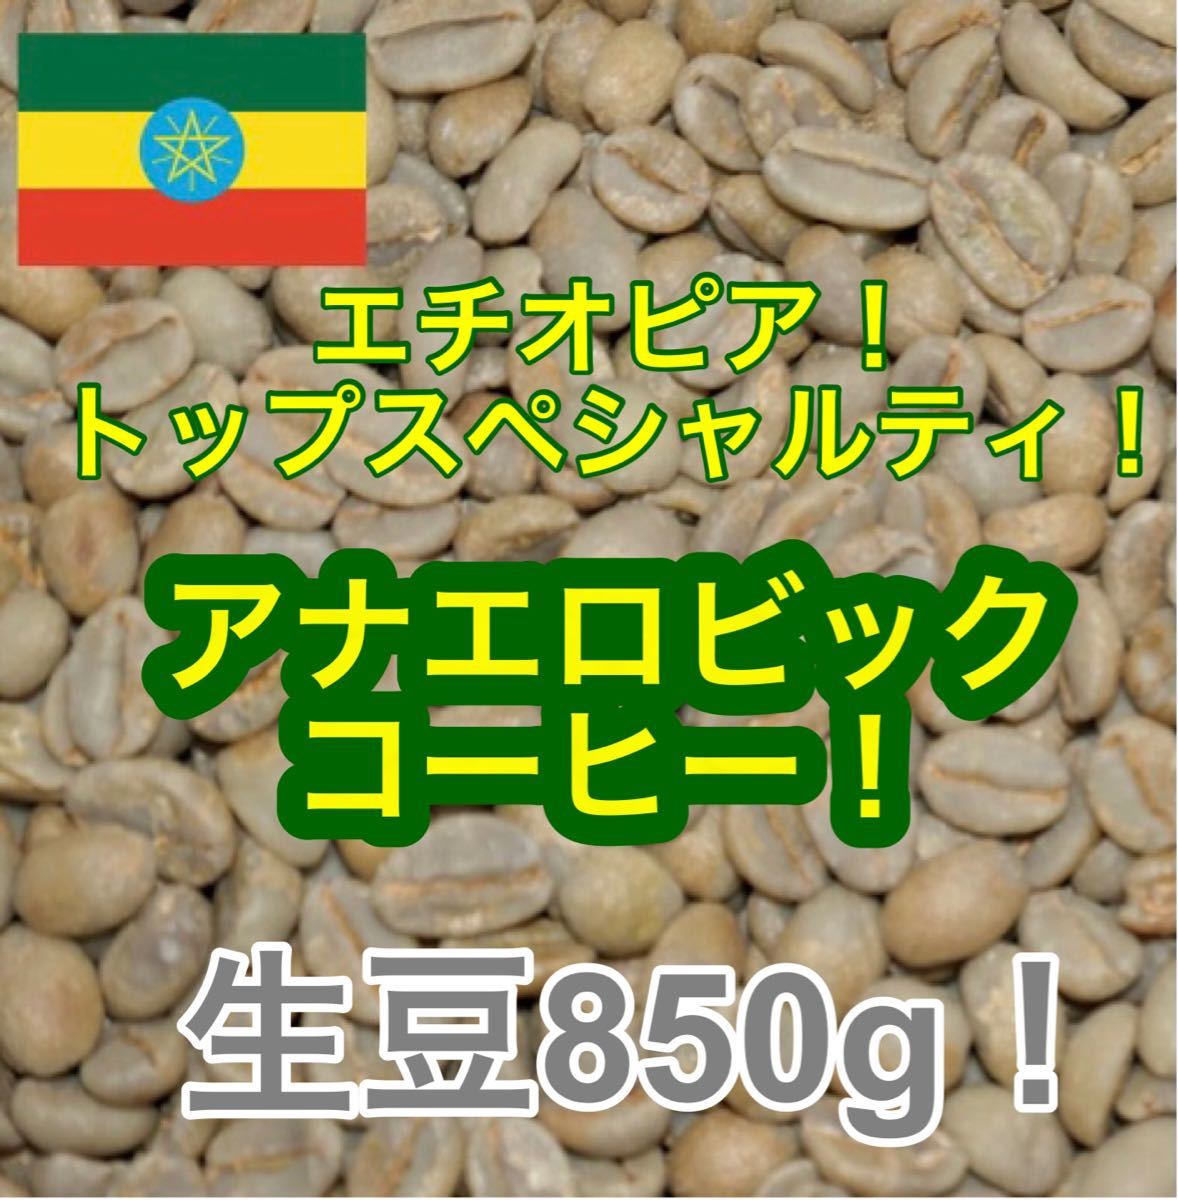 完売 天然酵母フルッタ メルカドン200g生豆コーヒー焙煎してません簡単ハンドピック済